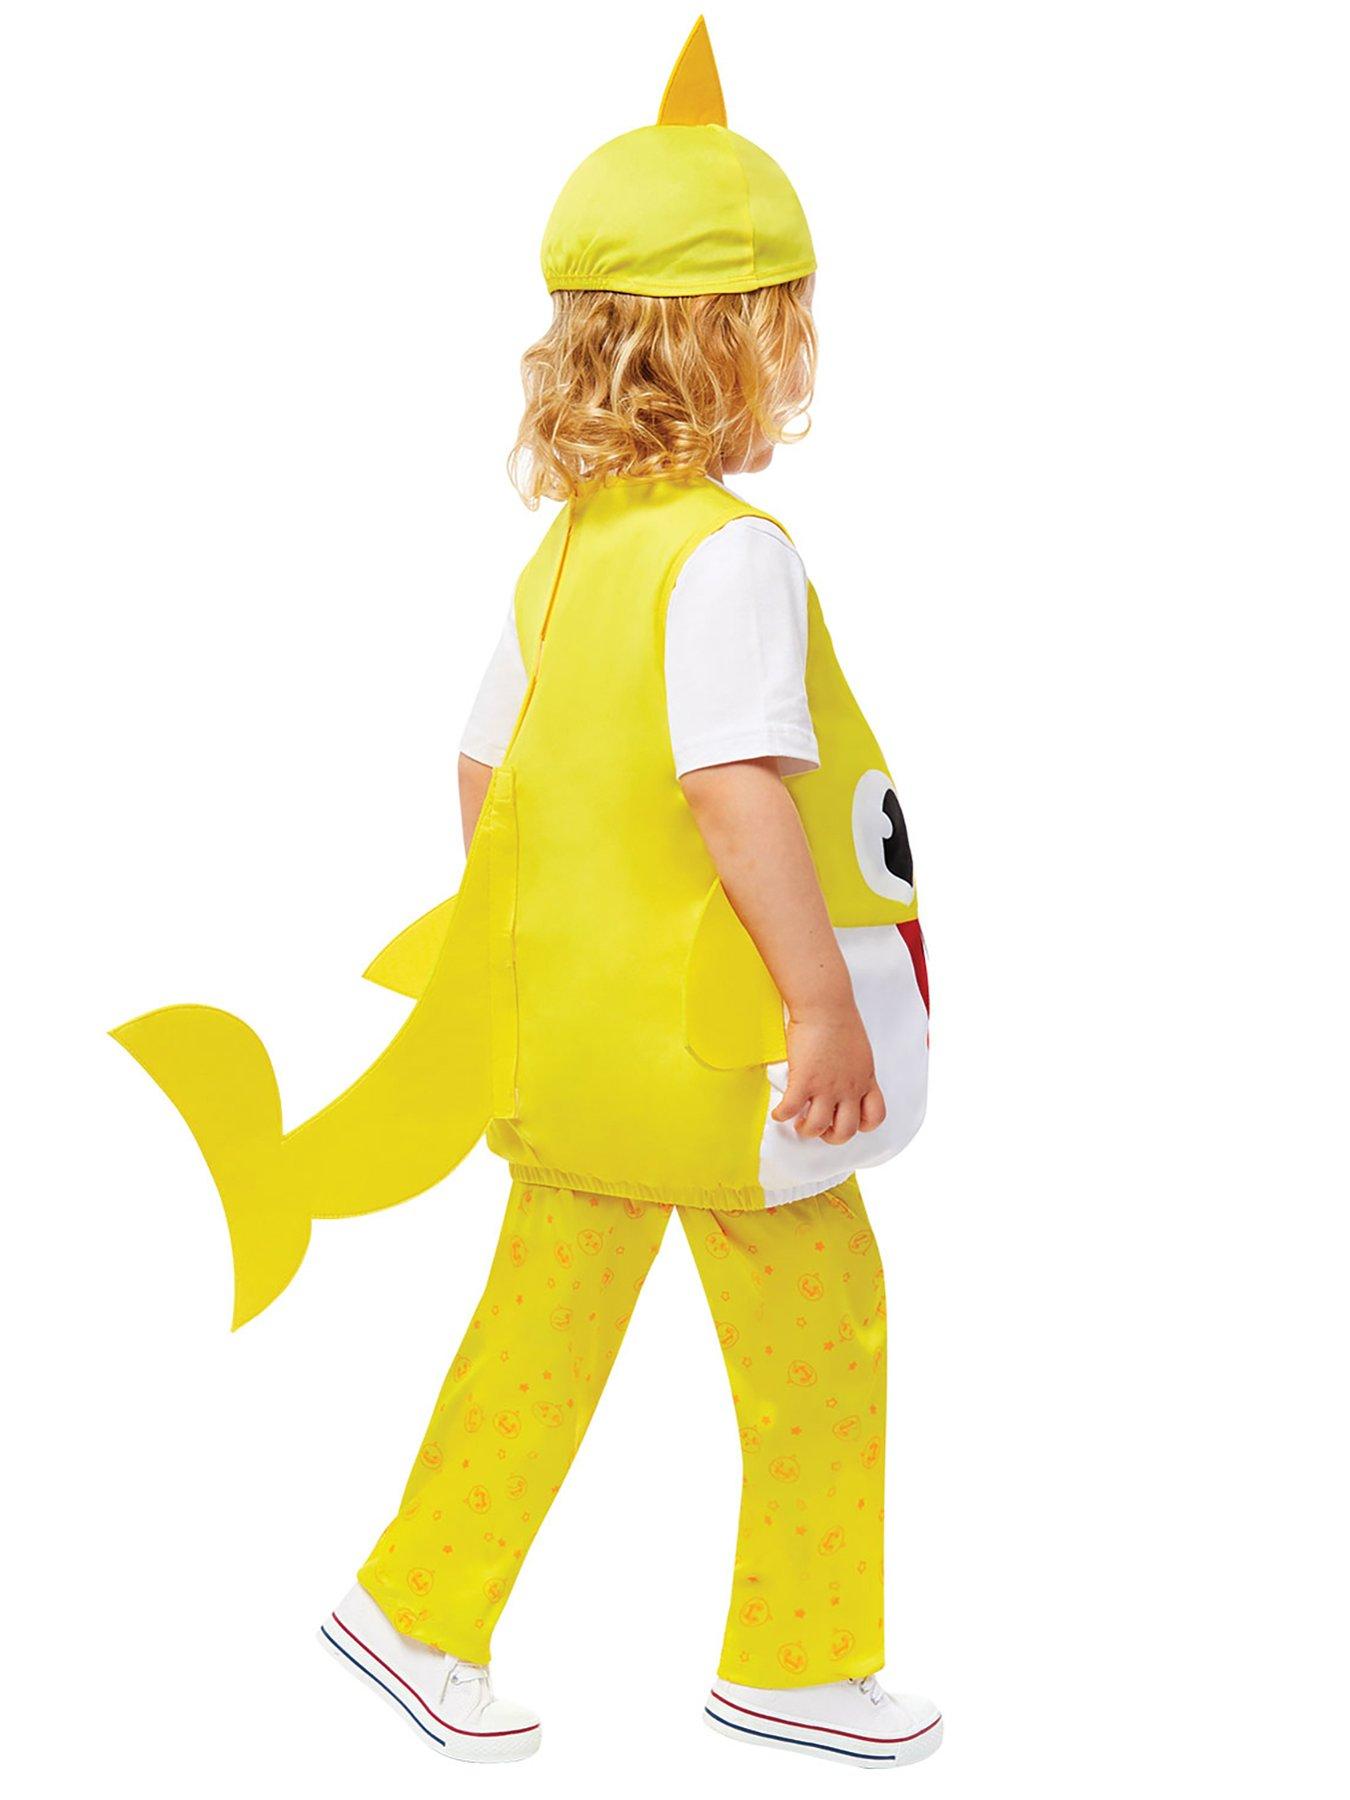 Baby Shark Yellow Baby Costume